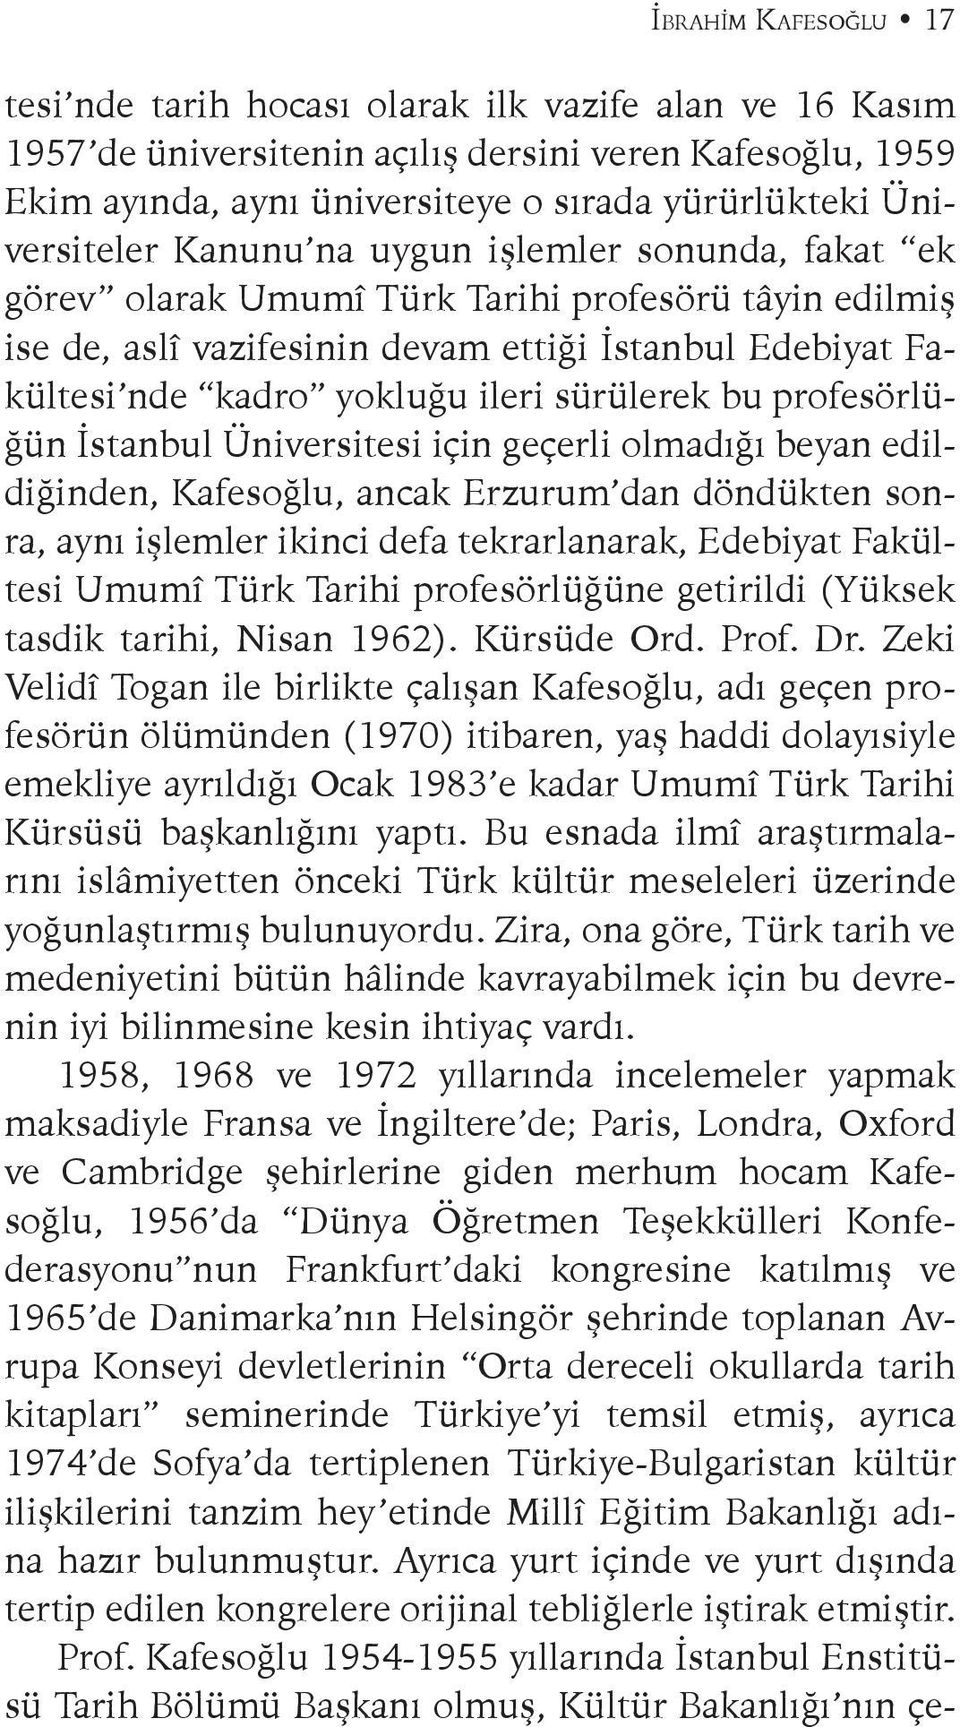 ileri sürülerek bu profesörlüğün İstanbul Üniversitesi için geçerli olmadığı beyan edildiğinden, Kafesoğlu, ancak Erzurum dan döndükten sonra, aynı işlemler ikinci defa tekrarlanarak, Edebiyat